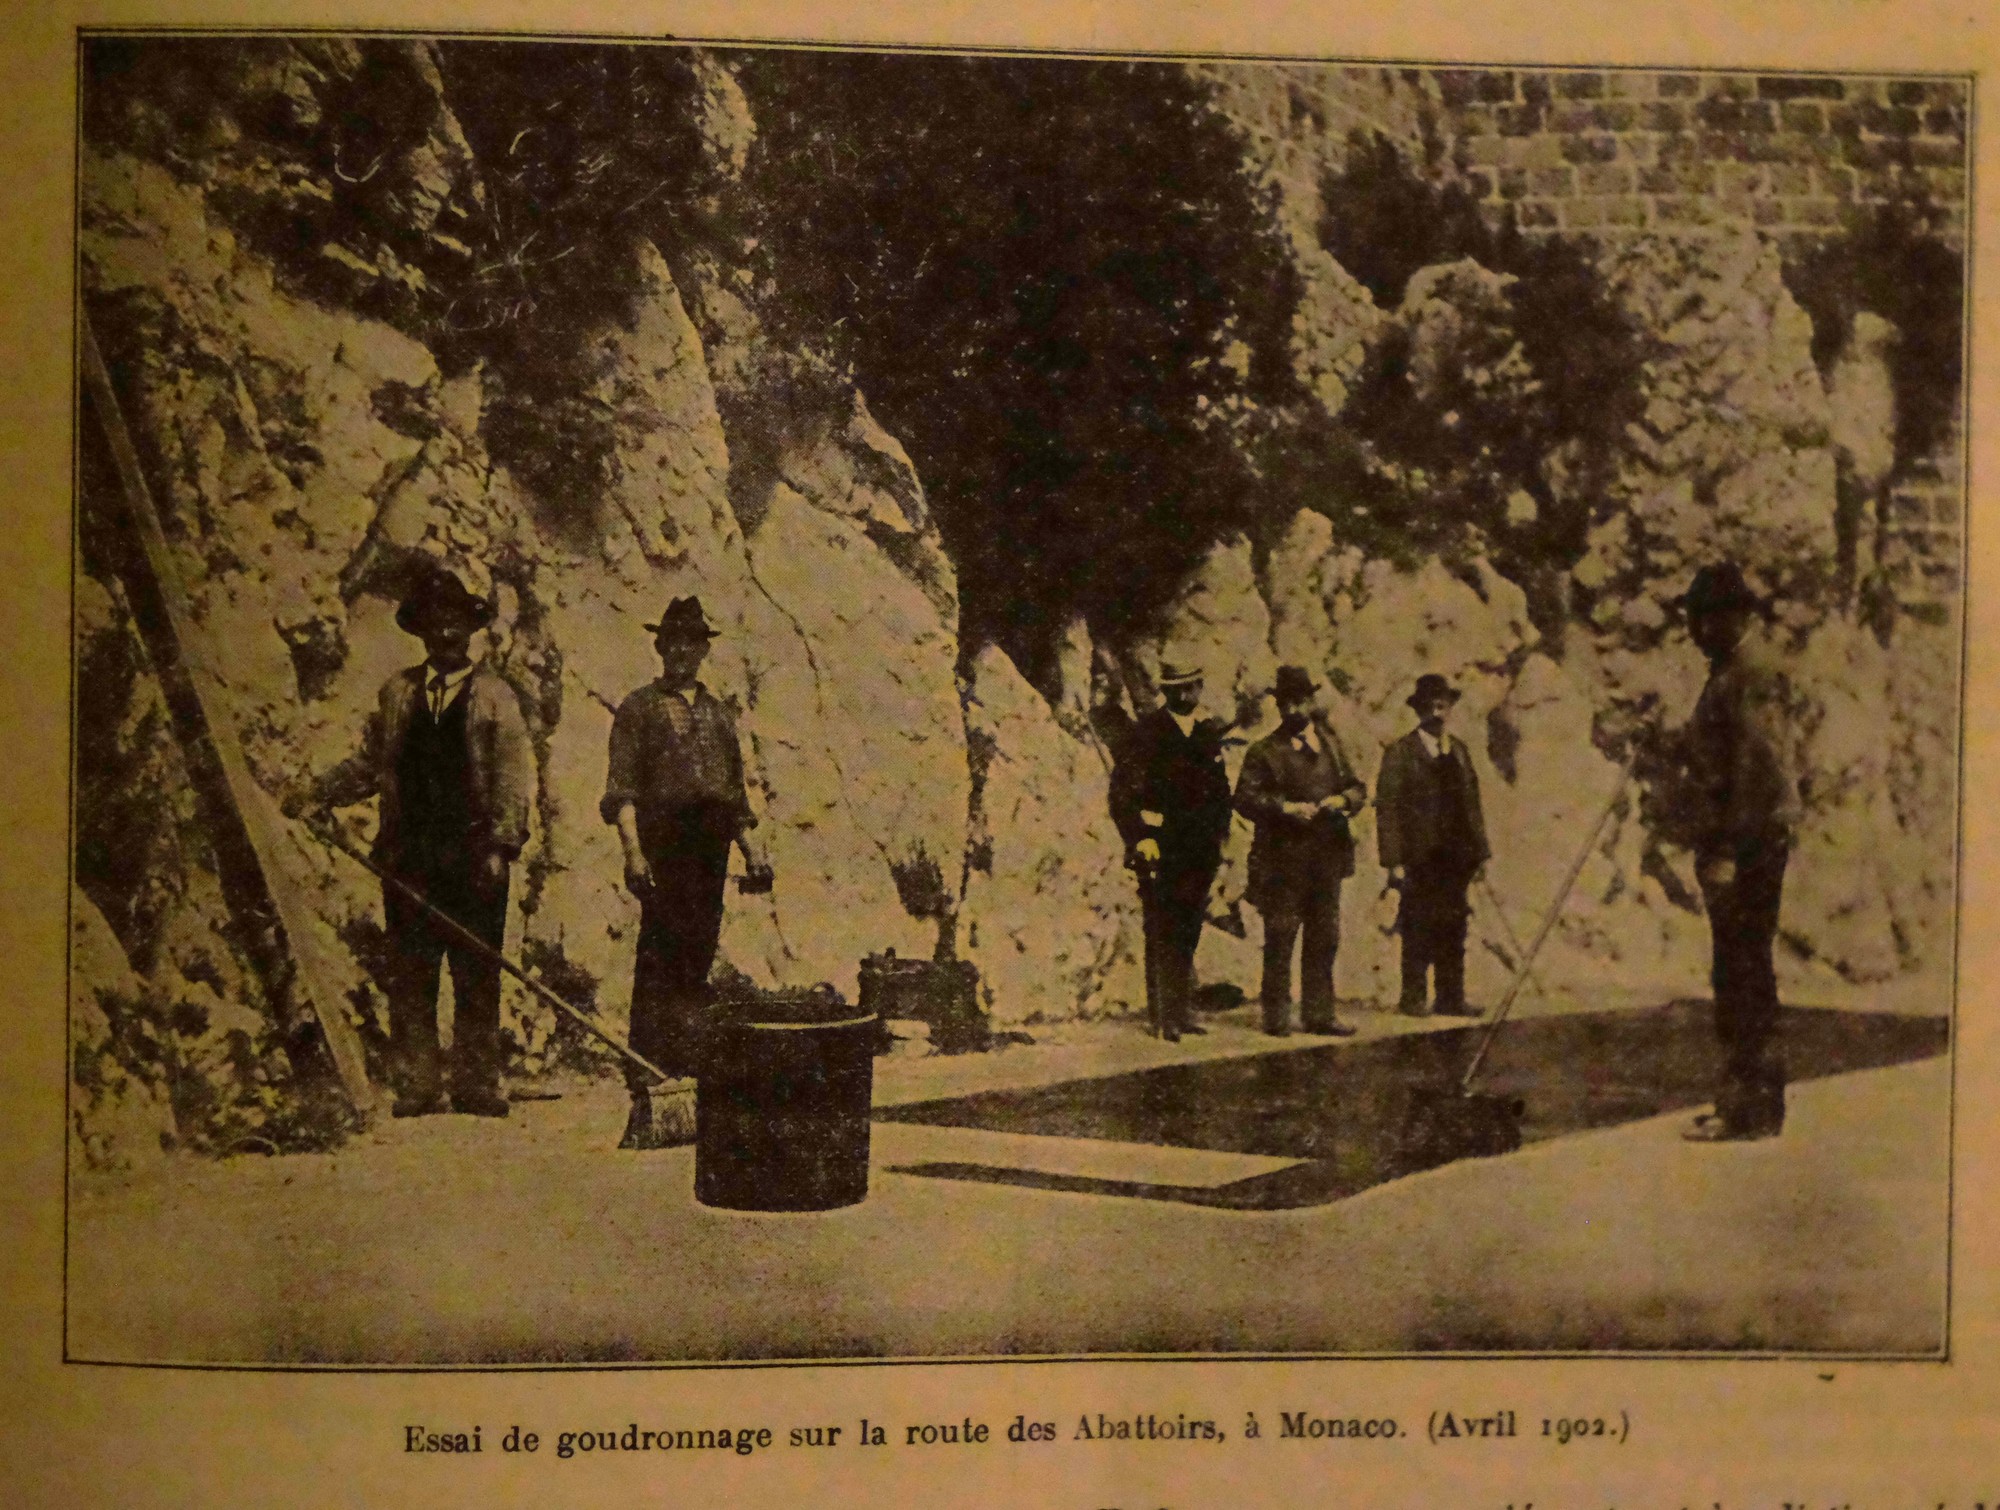 Essai de goudronnage à Monaco (1902)